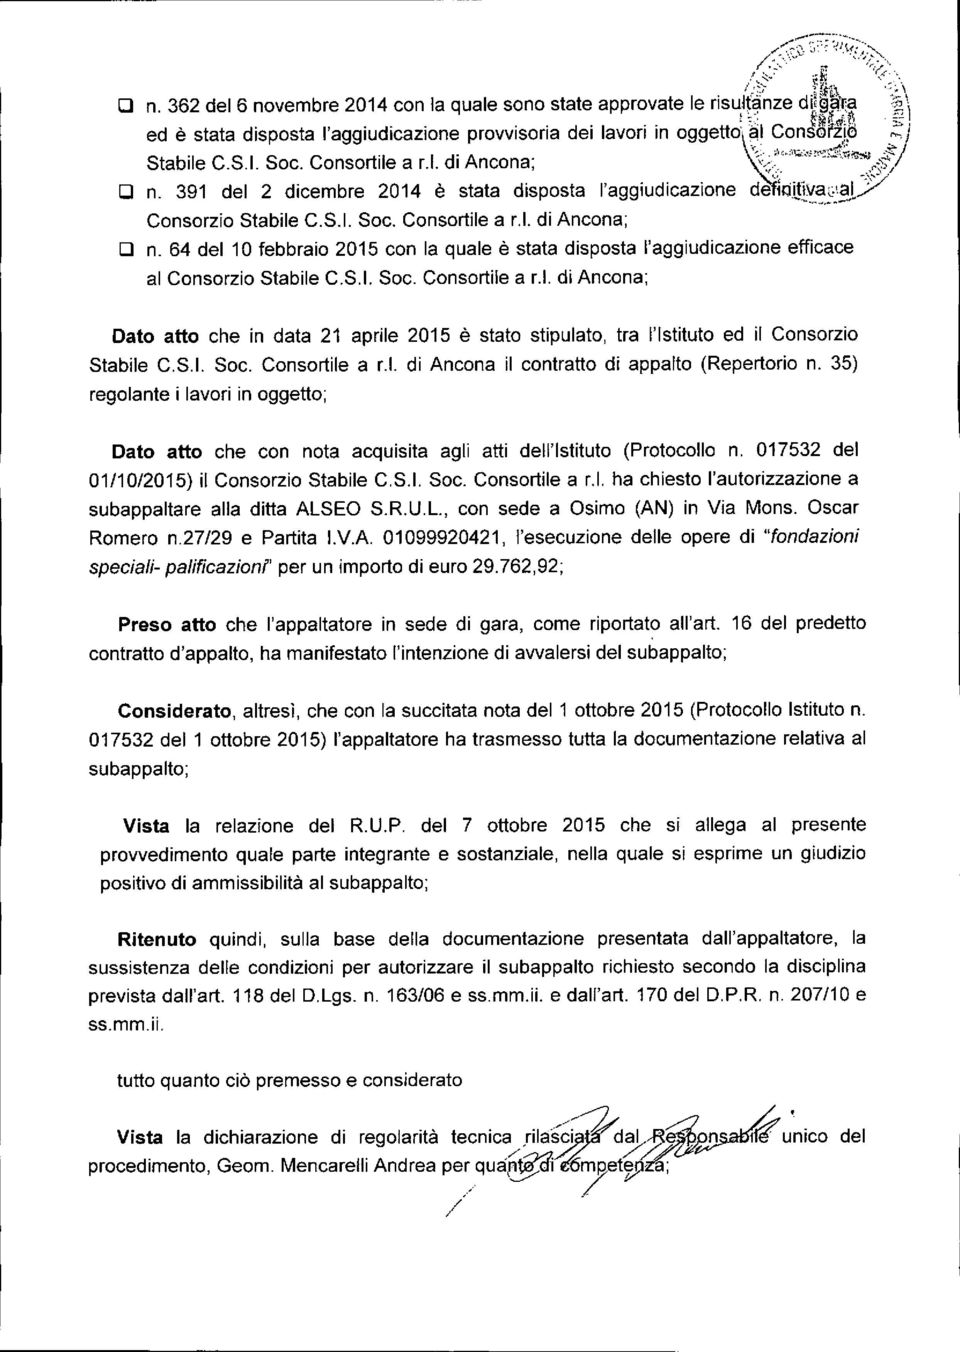 -/ D n, 391 del 2 dicembre 2014 è stata disposta l'aggiudicazione defkìijlv.,:~:~y Consorzio Stabile C,S.1. Soc. Consortile a LI. di Ancona; D n.